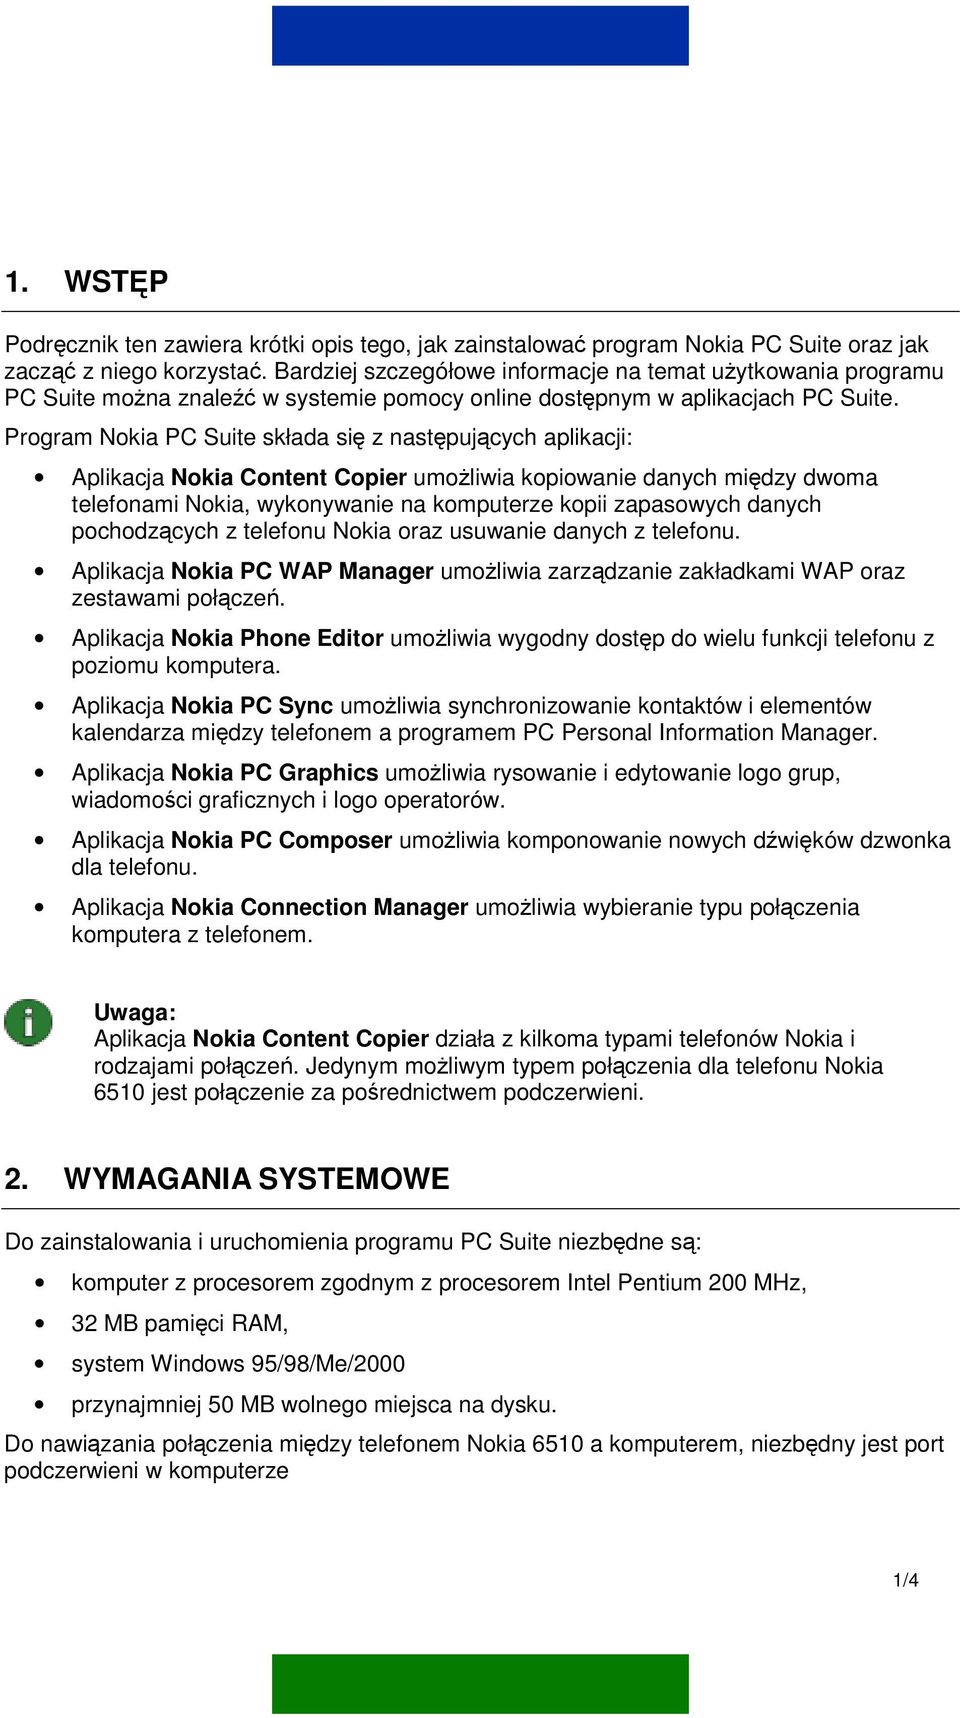 Program Nokia PC Suite składa się z następujących aplikacji: Aplikacja Nokia Content Copier umożliwia kopiowanie danych między dwoma telefonami Nokia, wykonywanie na komputerze kopii zapasowych